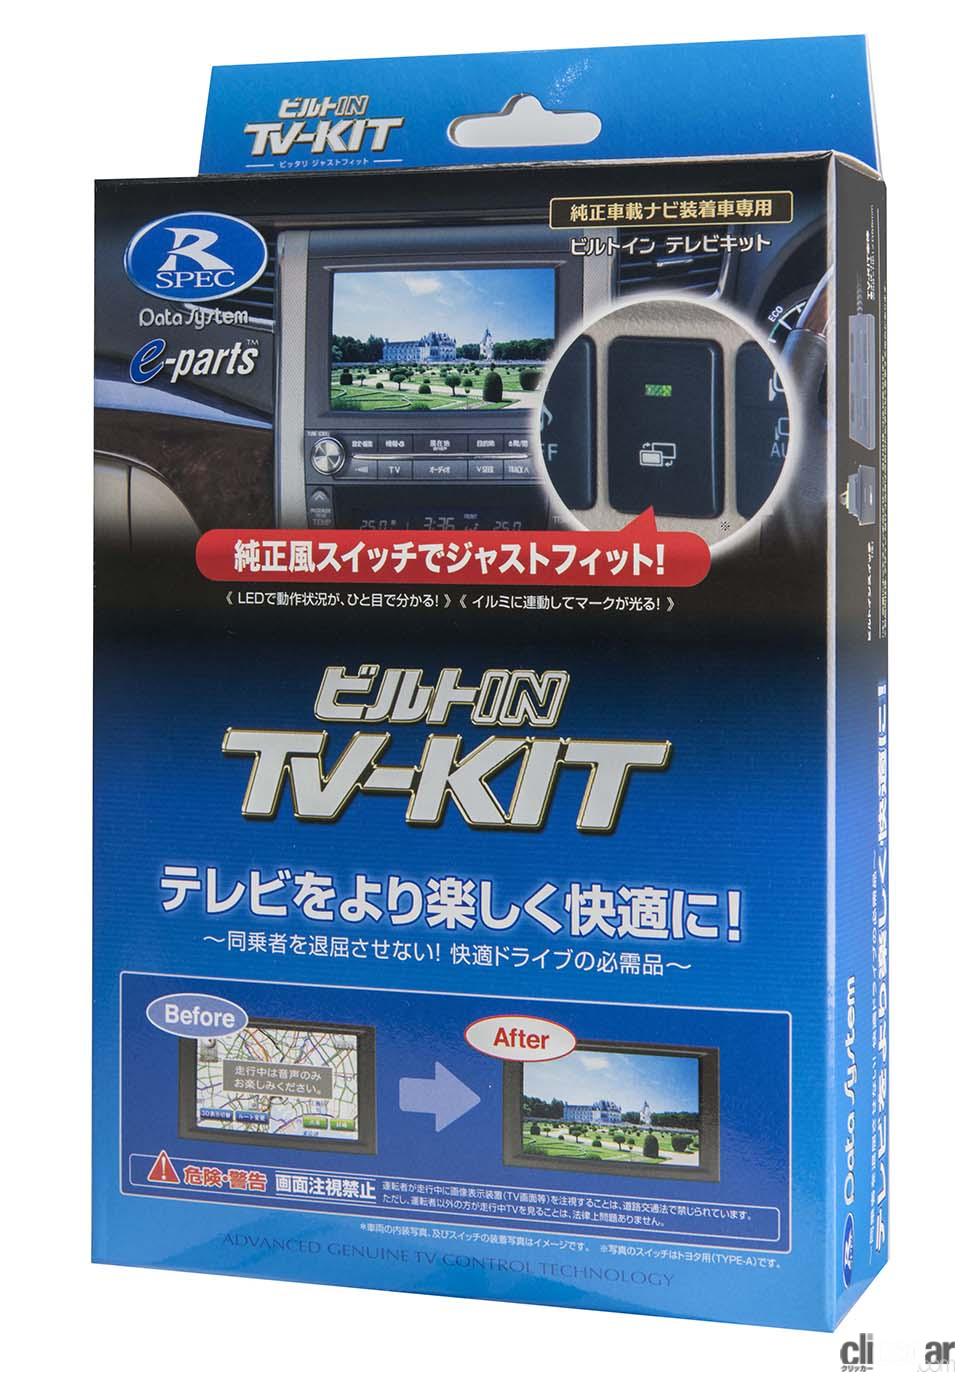 新型トヨタ・シエンタ用「TV-KIT」が登場。純正テレビが走行中でも観られタッチ操作も可能に  clicccar.com